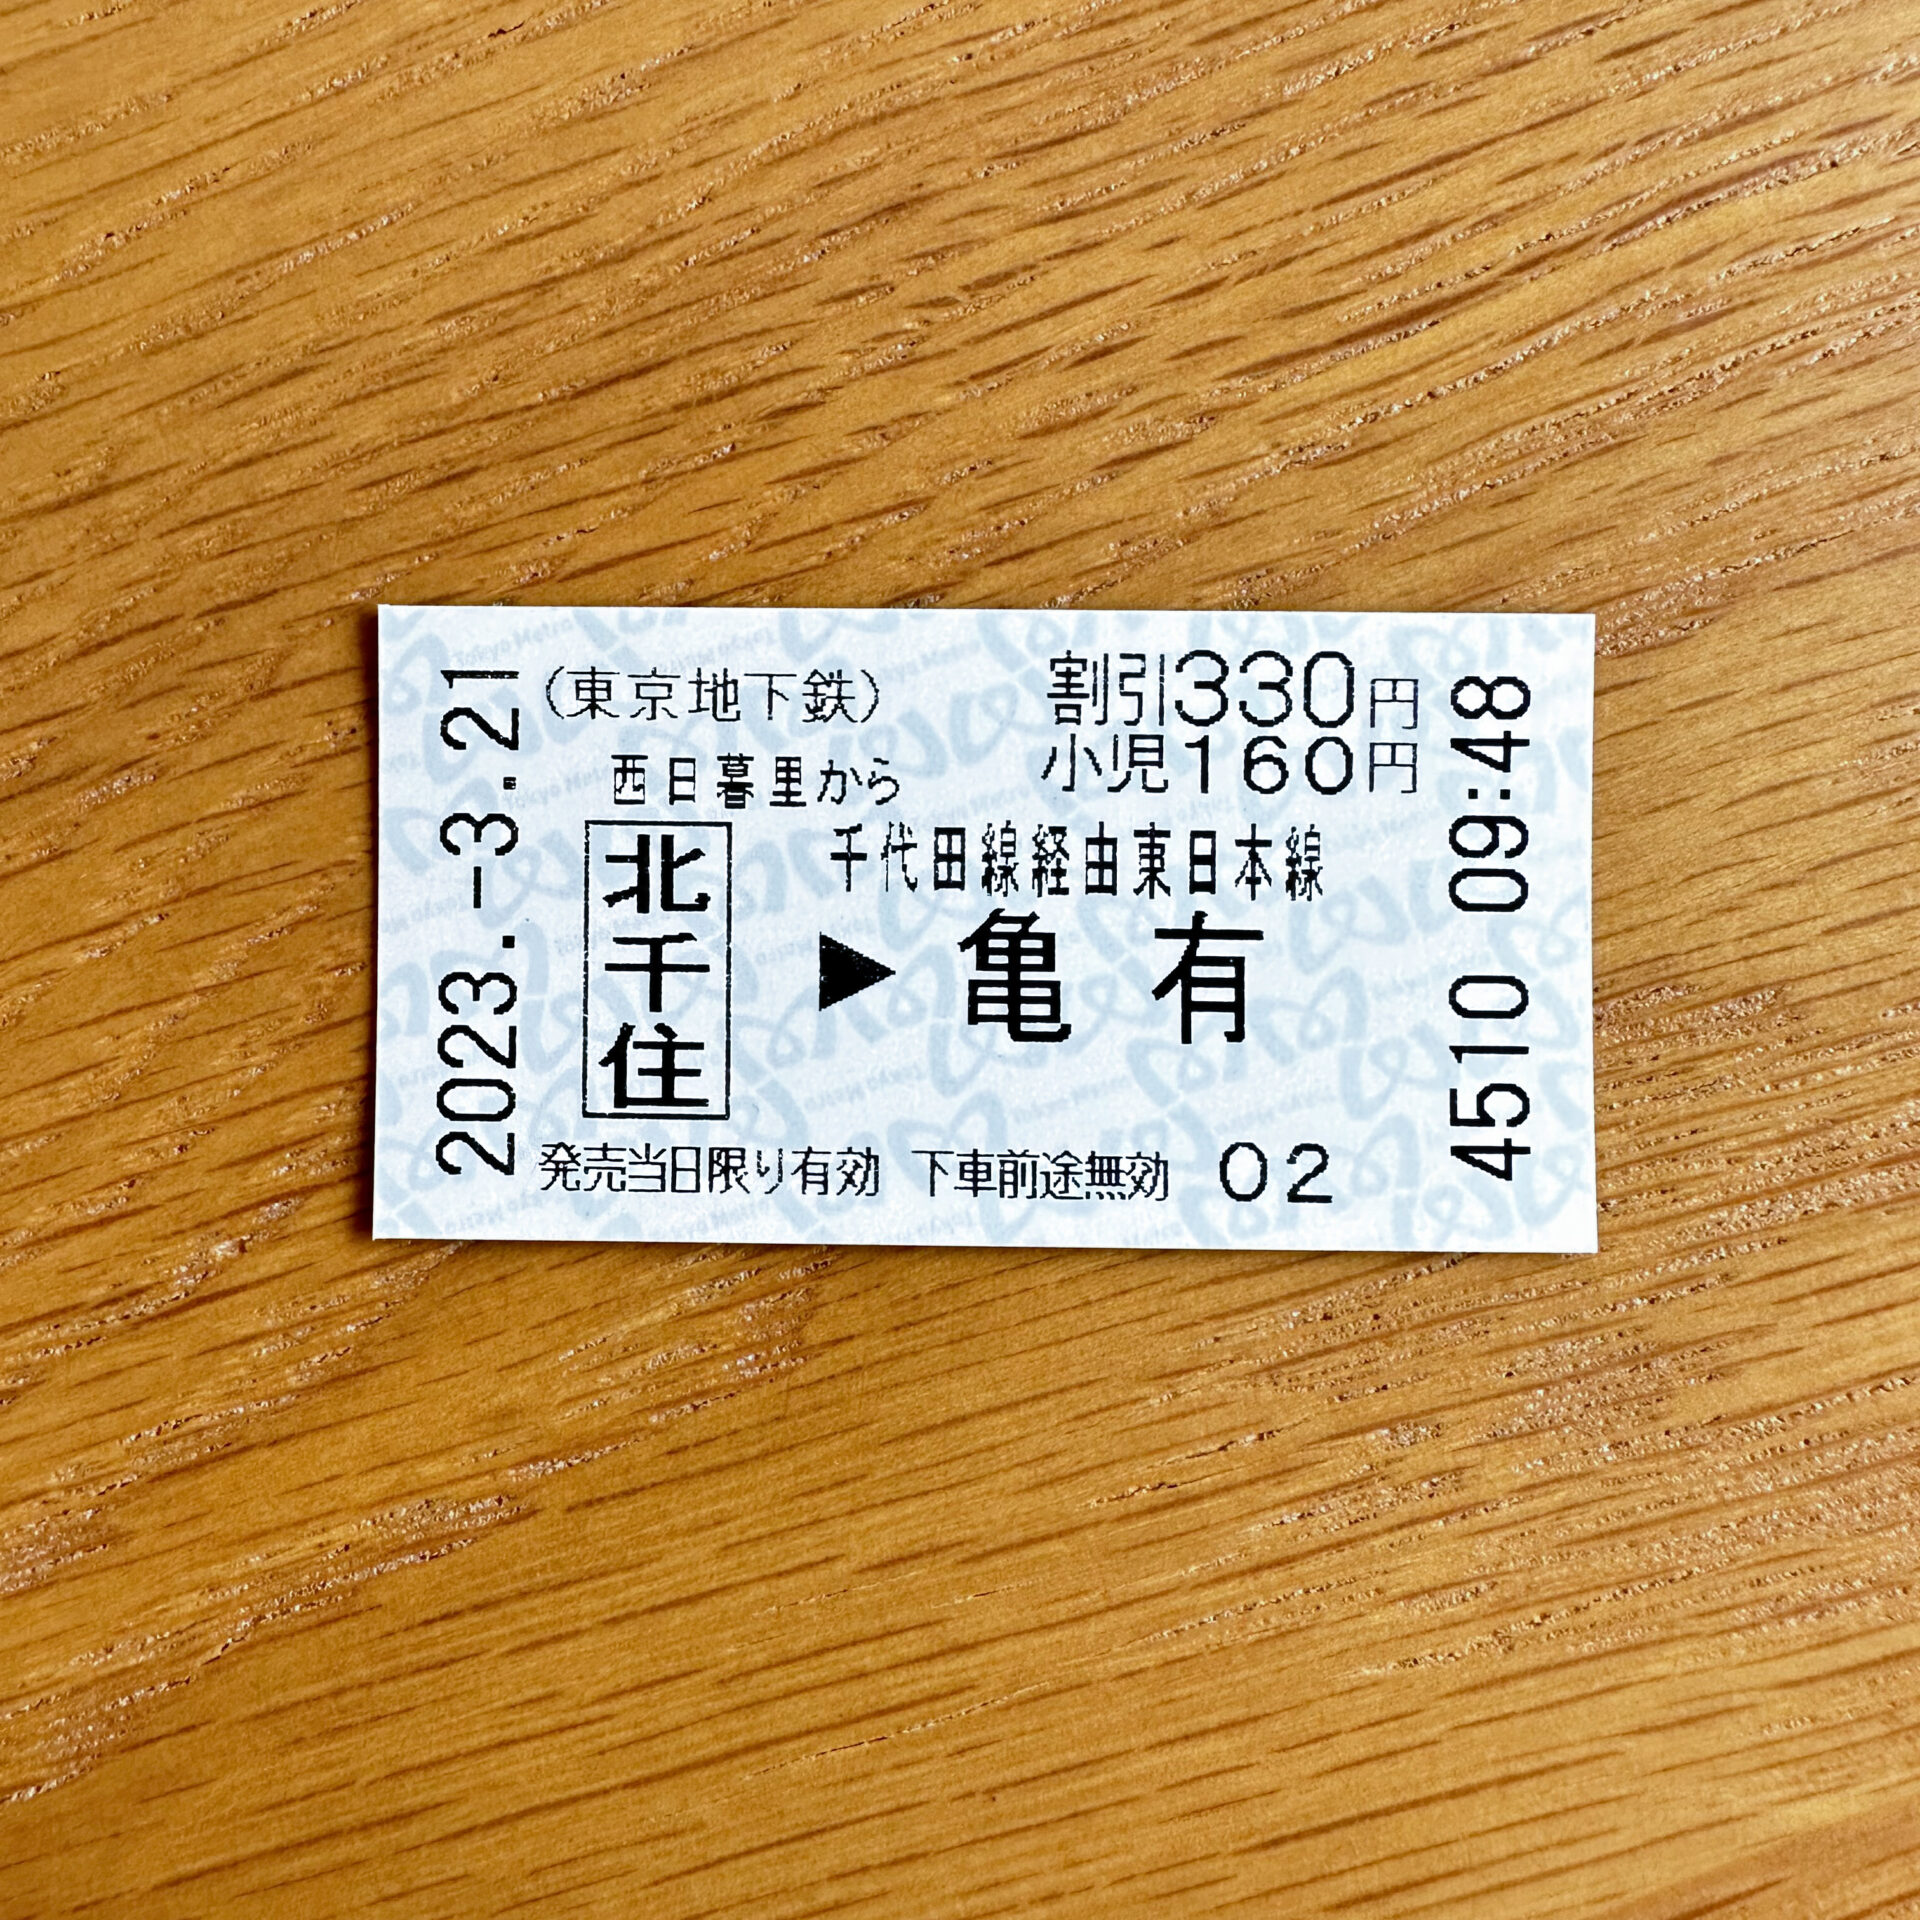 メトロ西日暮里駅から亀有駅ゆき普通乗車券